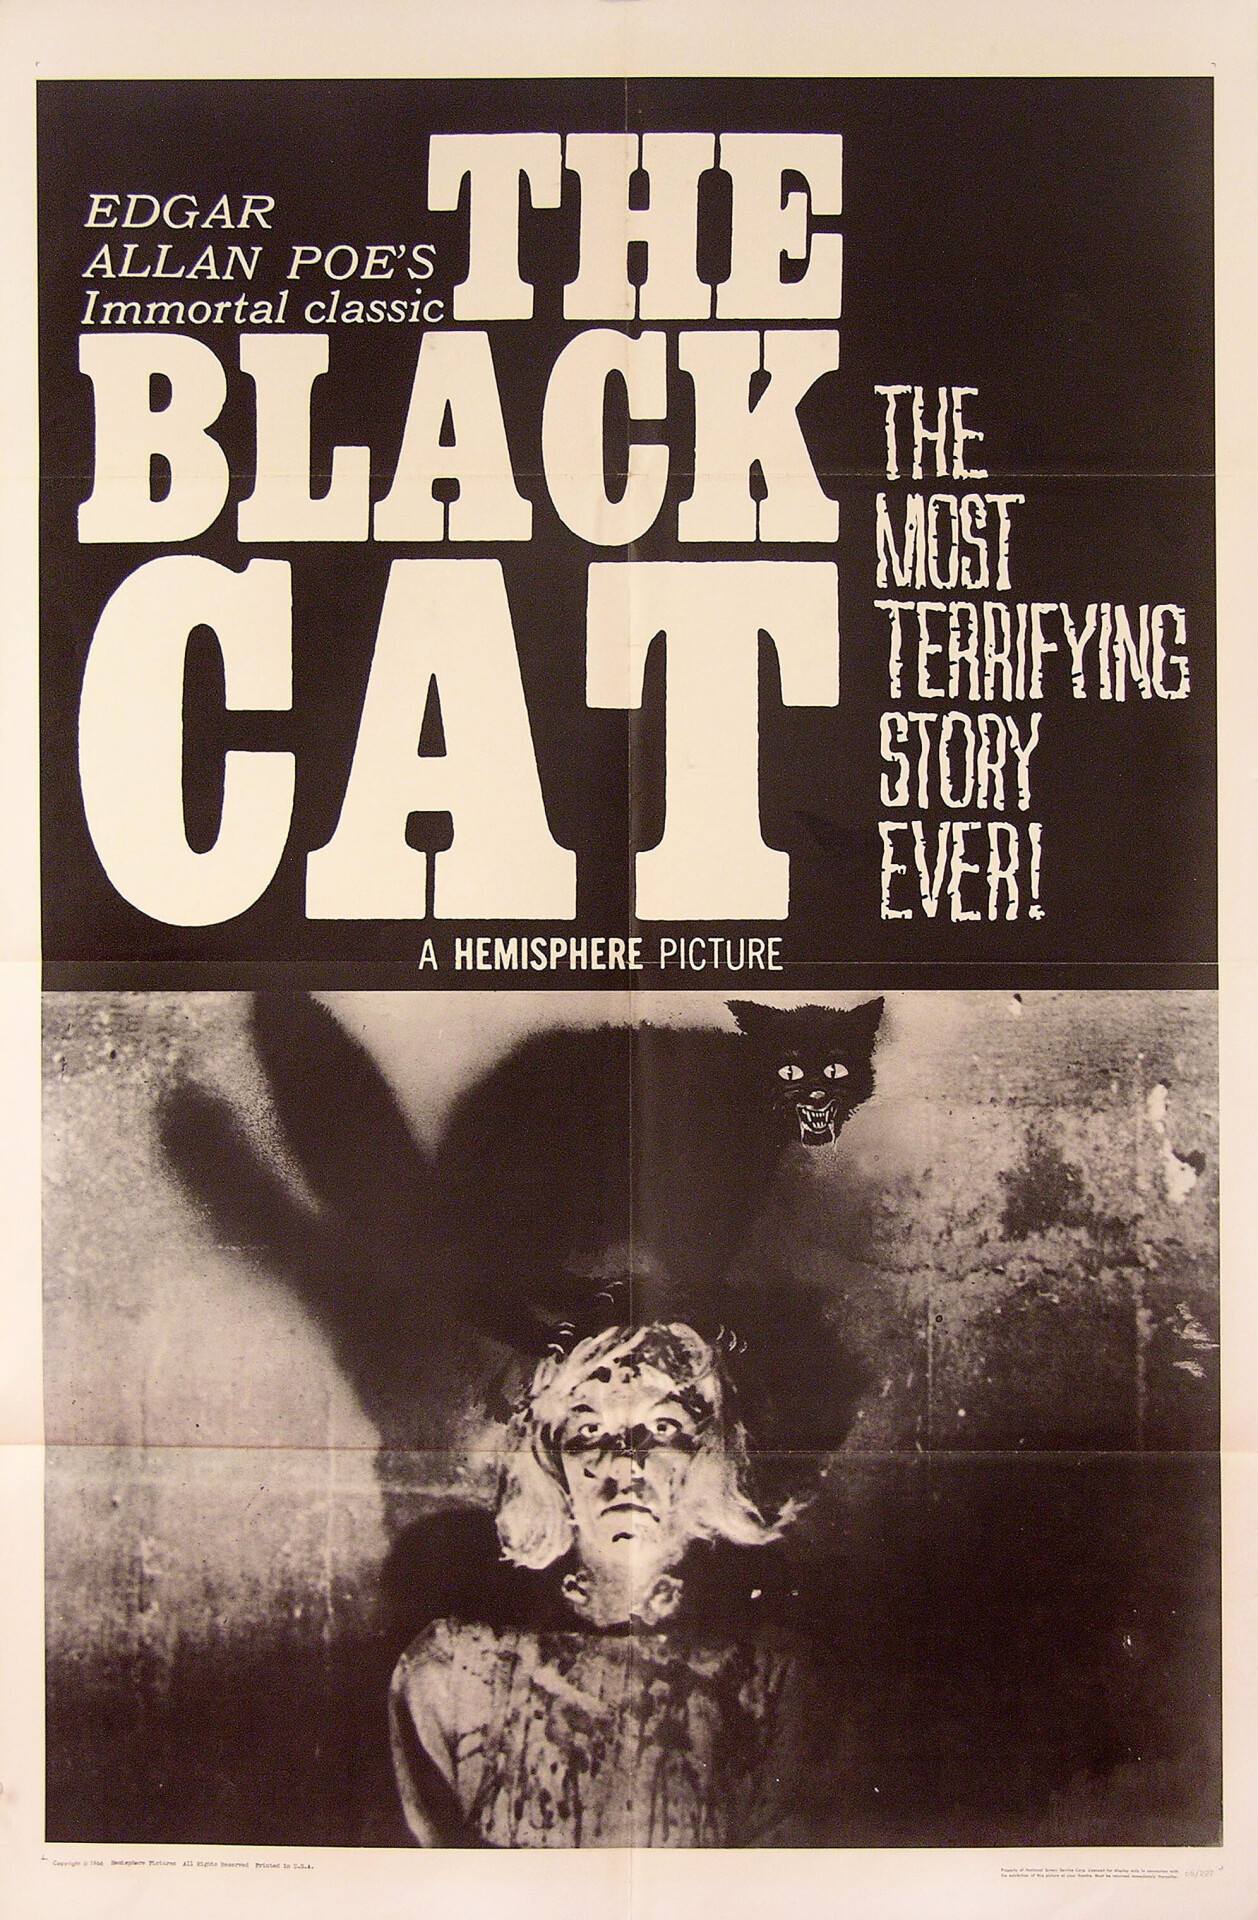 Чёрный кот (The Black Cat, 1966), режиссёр Гарольд Хоффман, американский постер к фильму (ужасы, 1966 год)